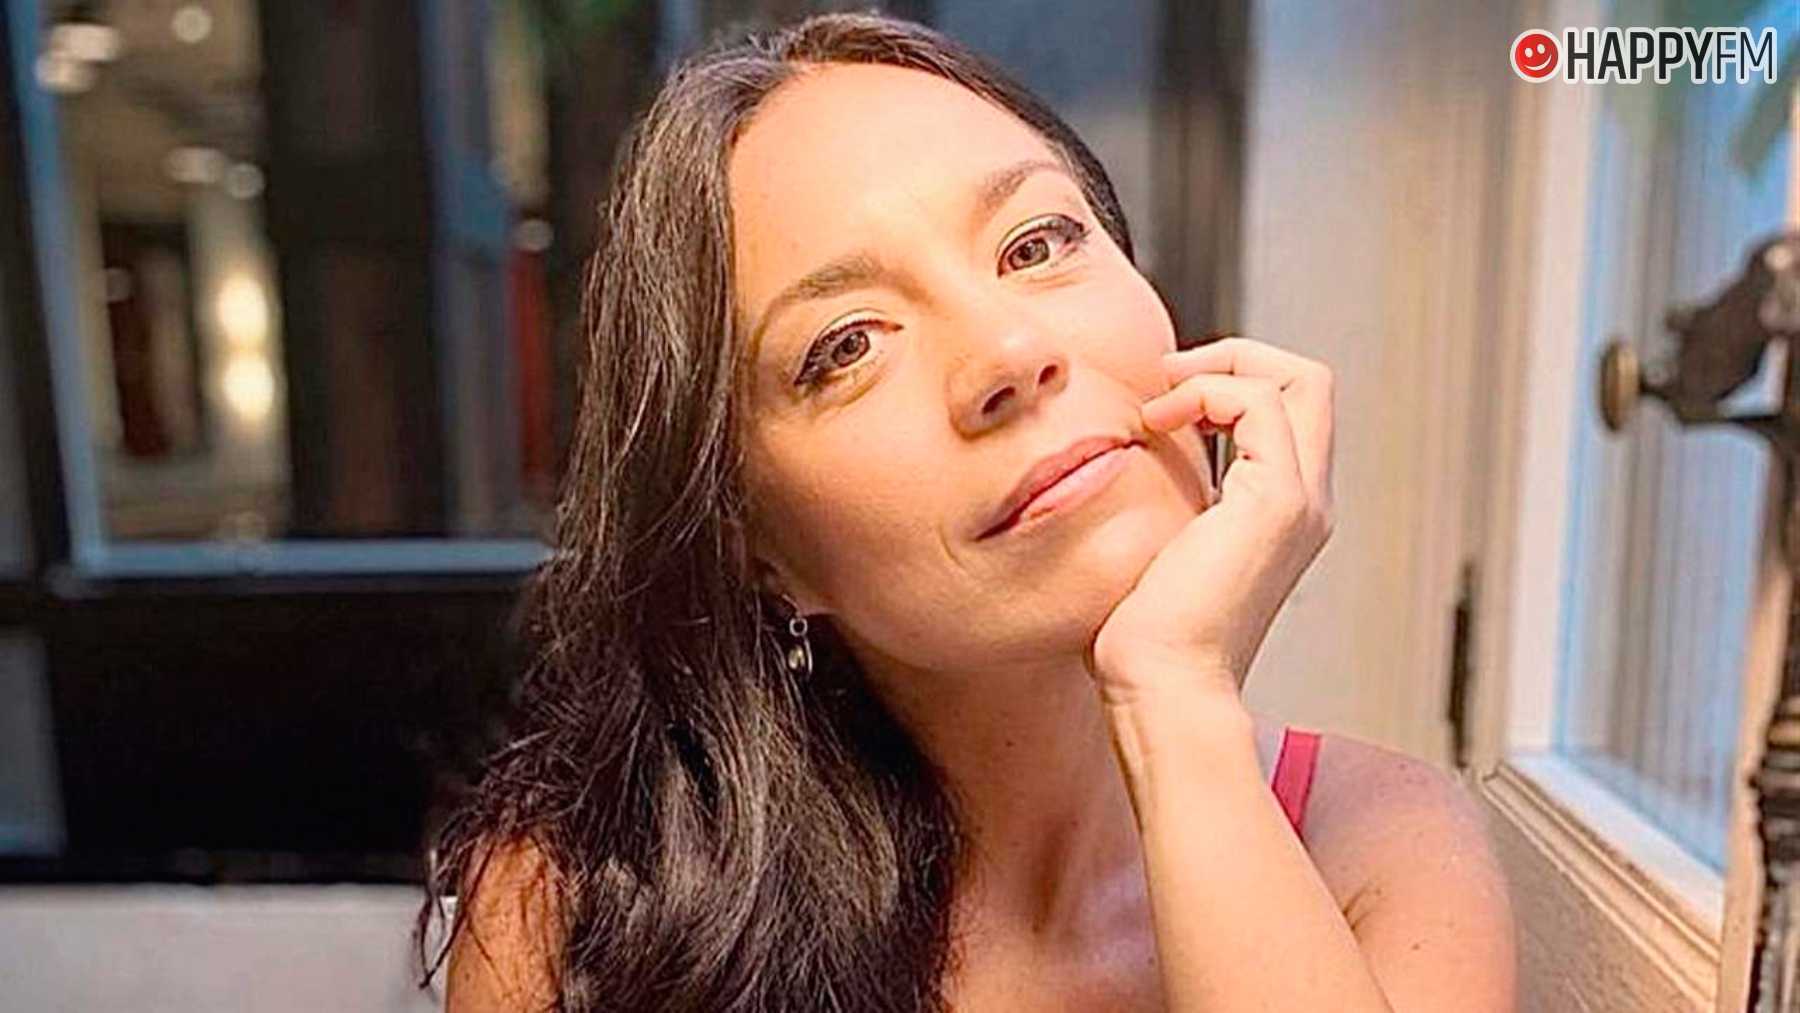 Ainhoa Cantalapiedra, ex concursante de ‘OT’, sale en defensa de Luis Rubiales tras la polémica